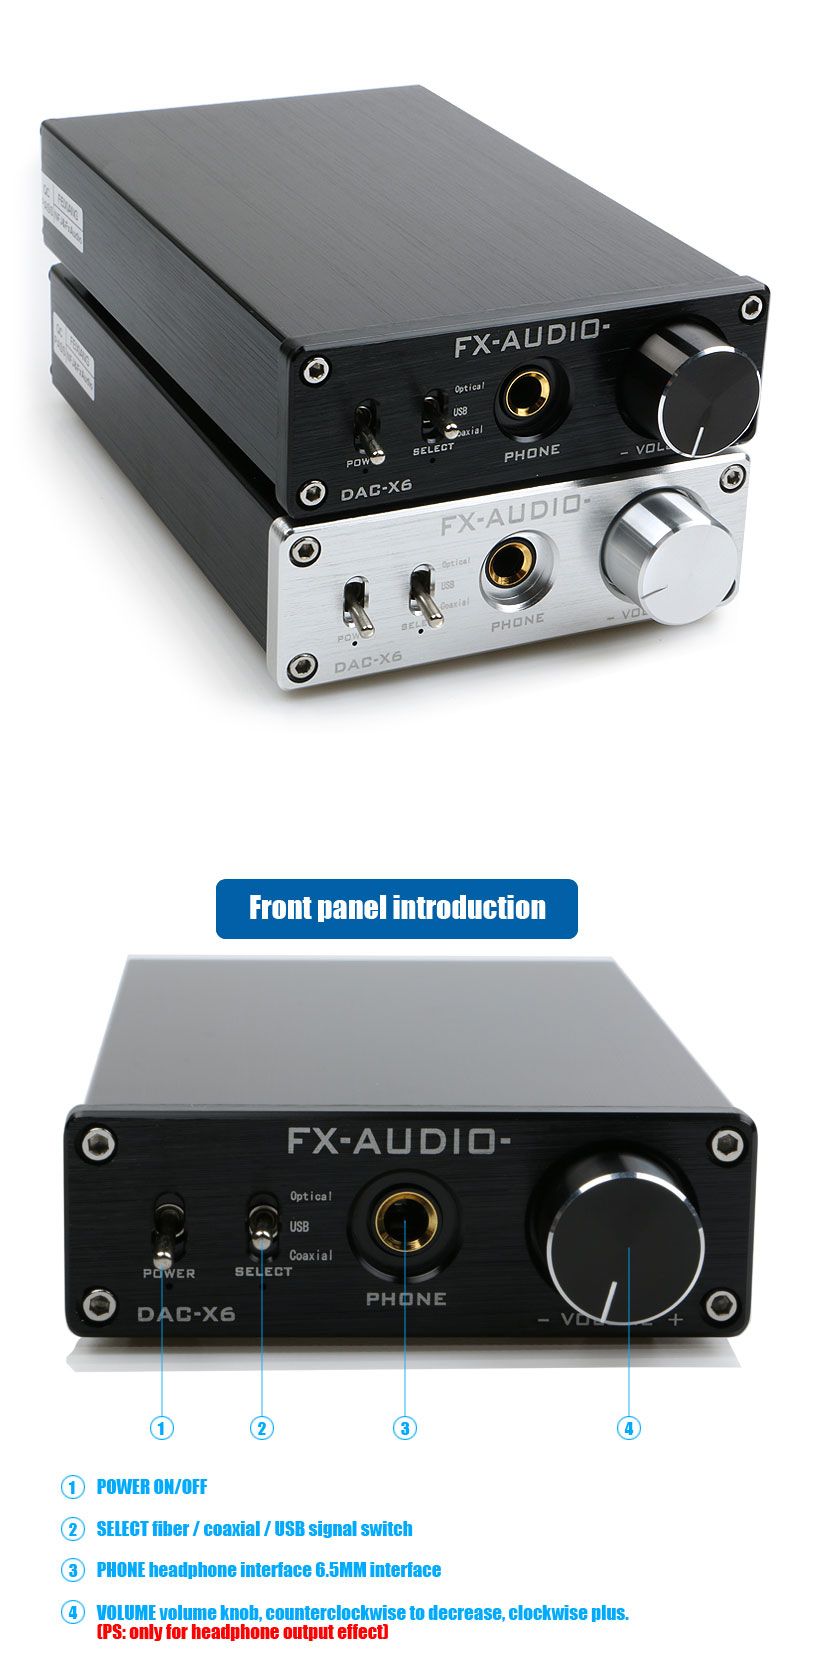 FX-Audio-DAC-X6-DAC-24BIT192-HiFi-Amplifier-1116991